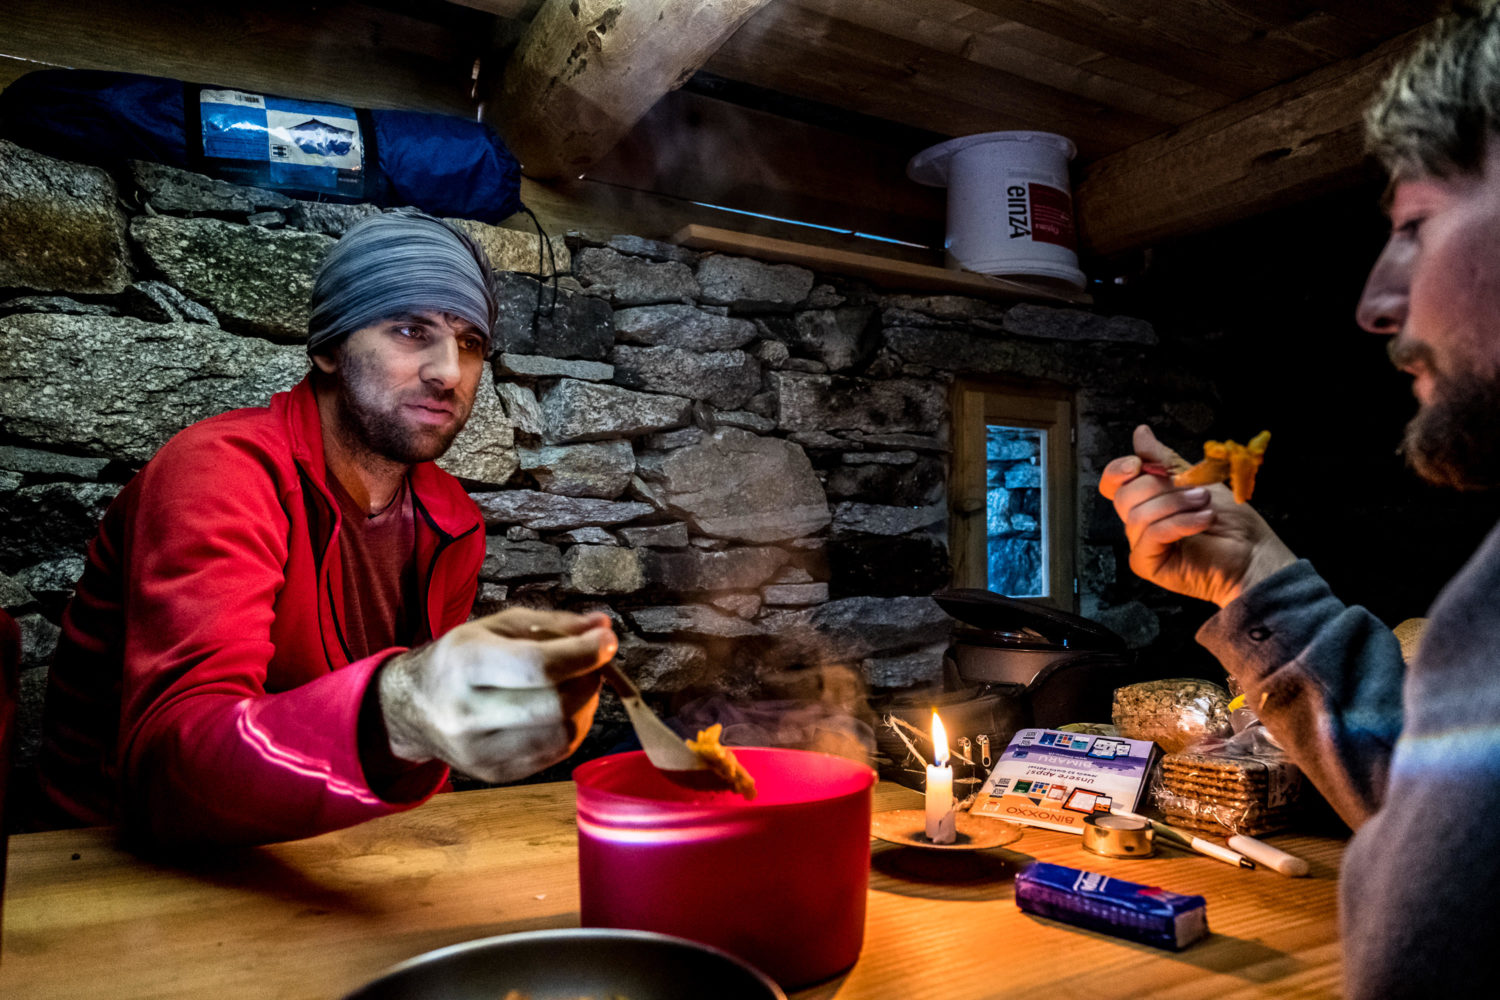 Zwei Wanderer essen Nudeln aus einem Topf in einer Steinhütte bei Kerzenlicht